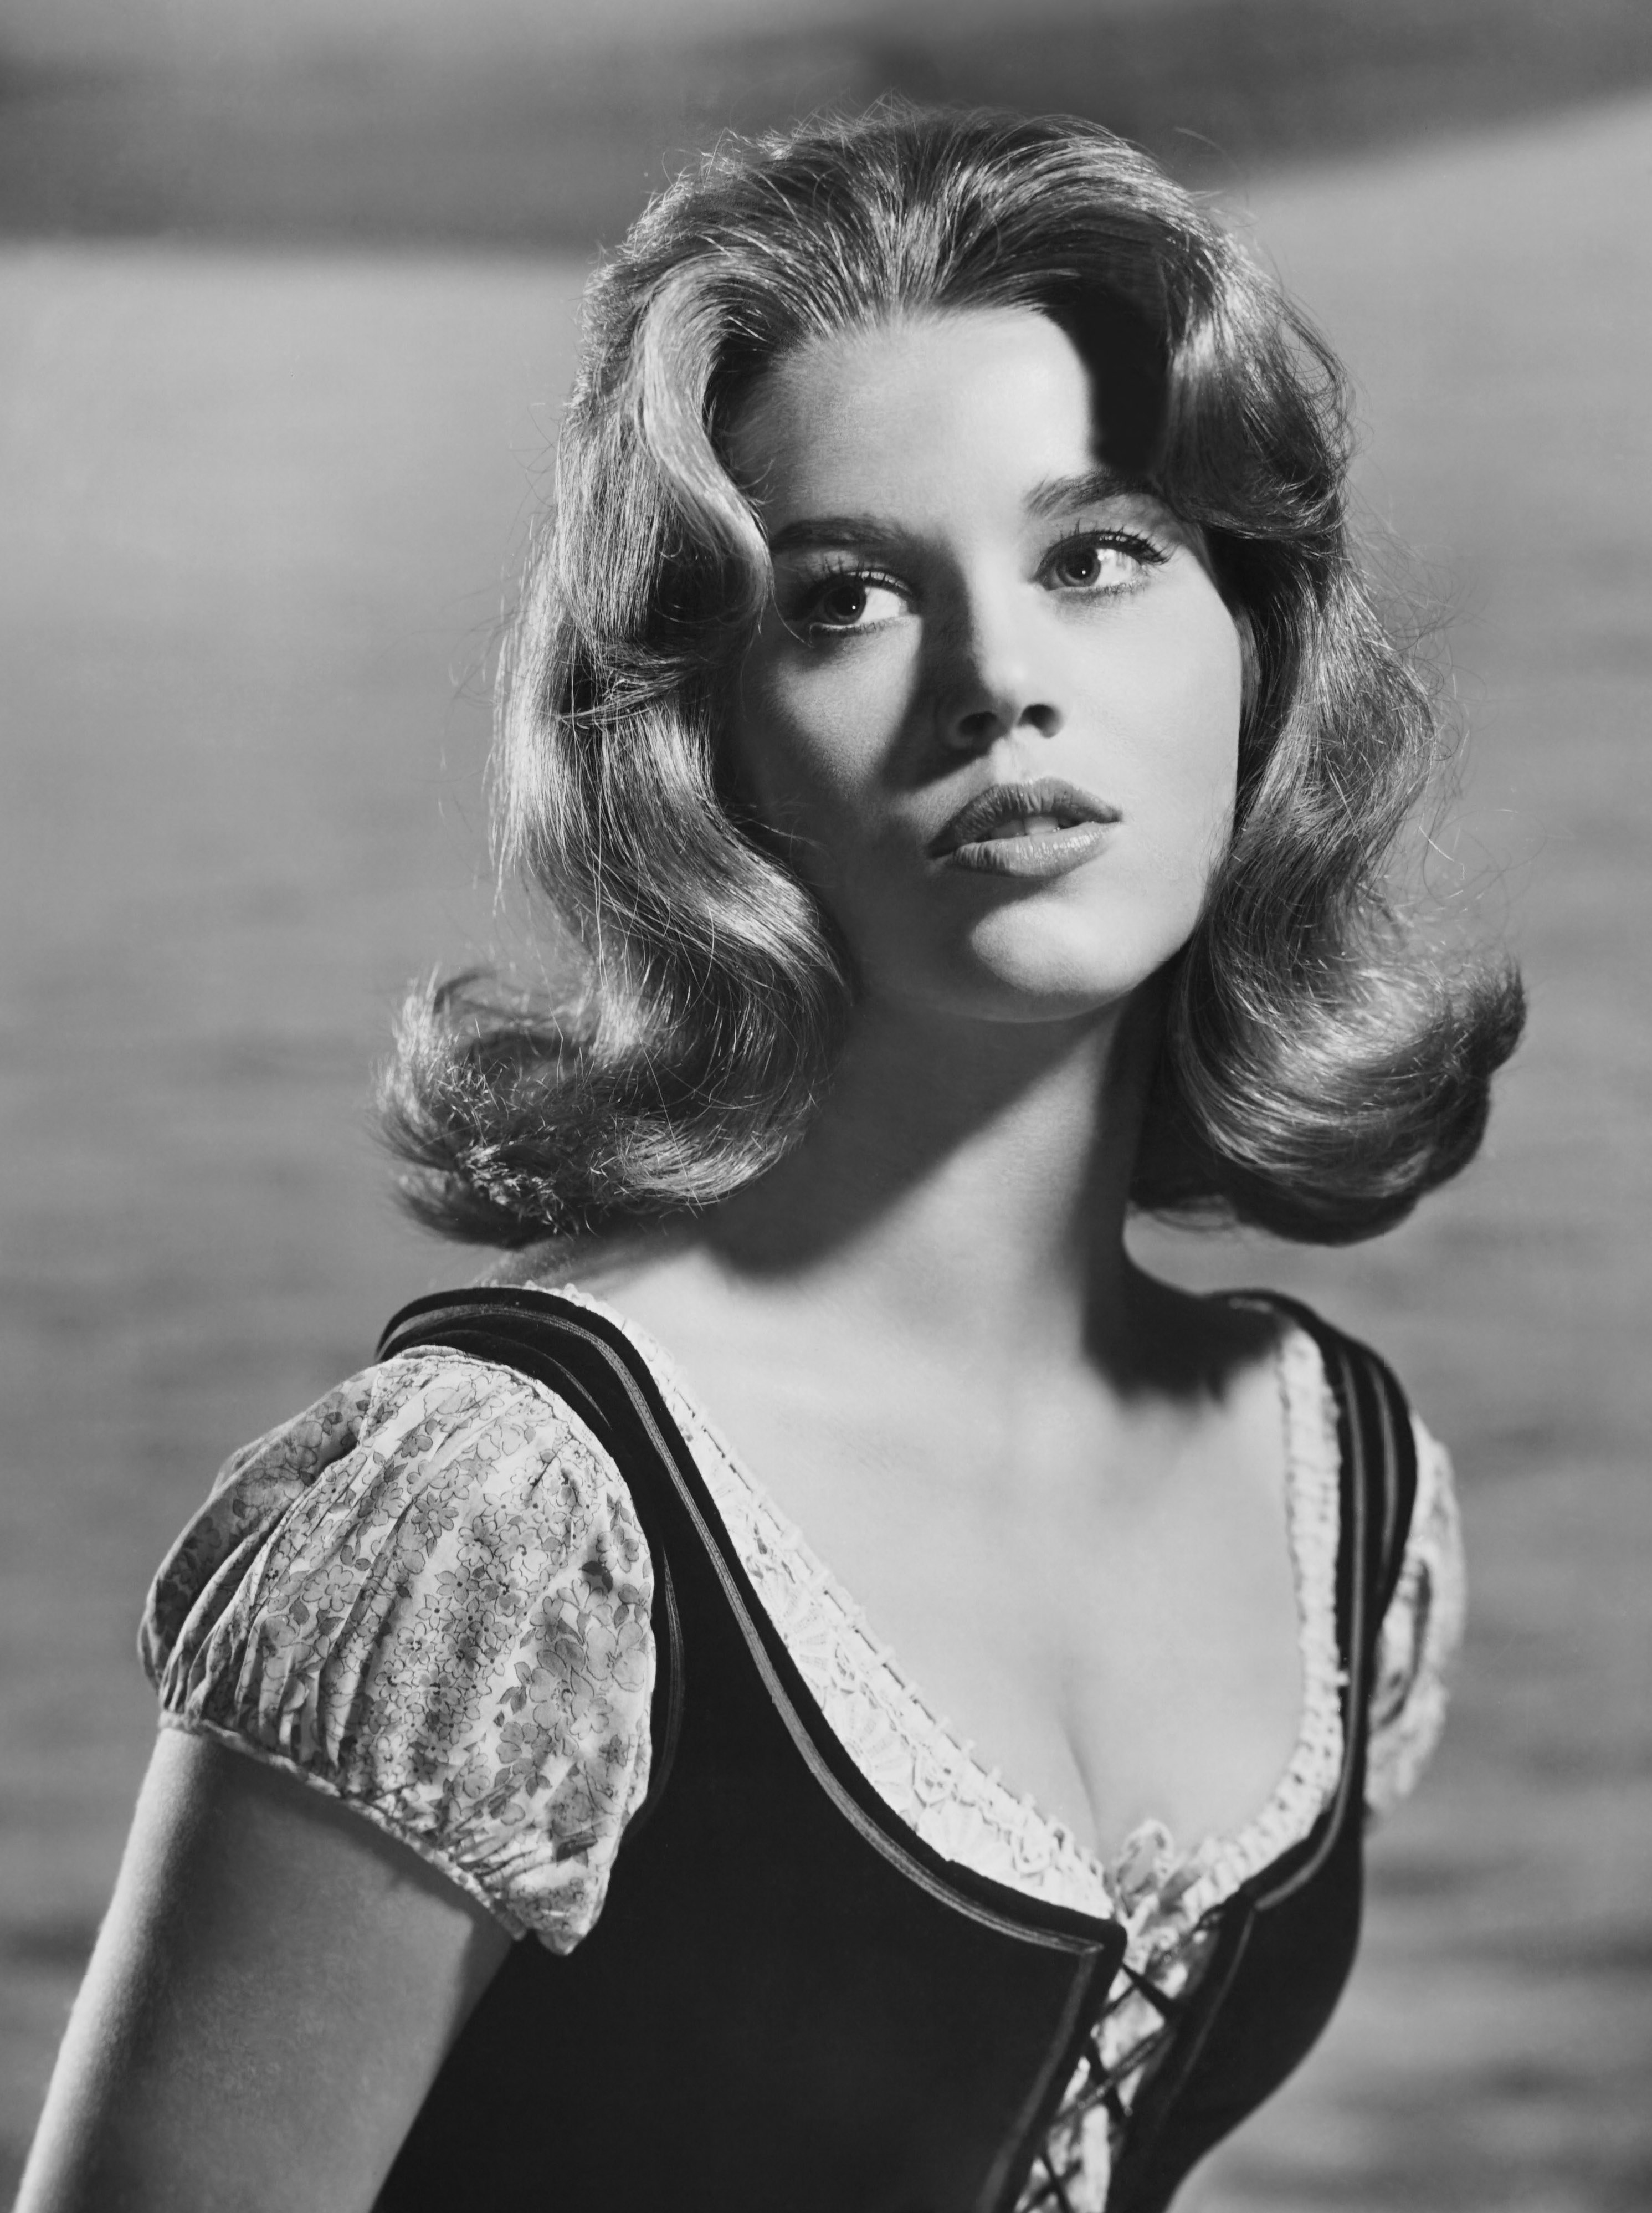 Jane Fonda wearing a prairie-like dress in front of a body of water